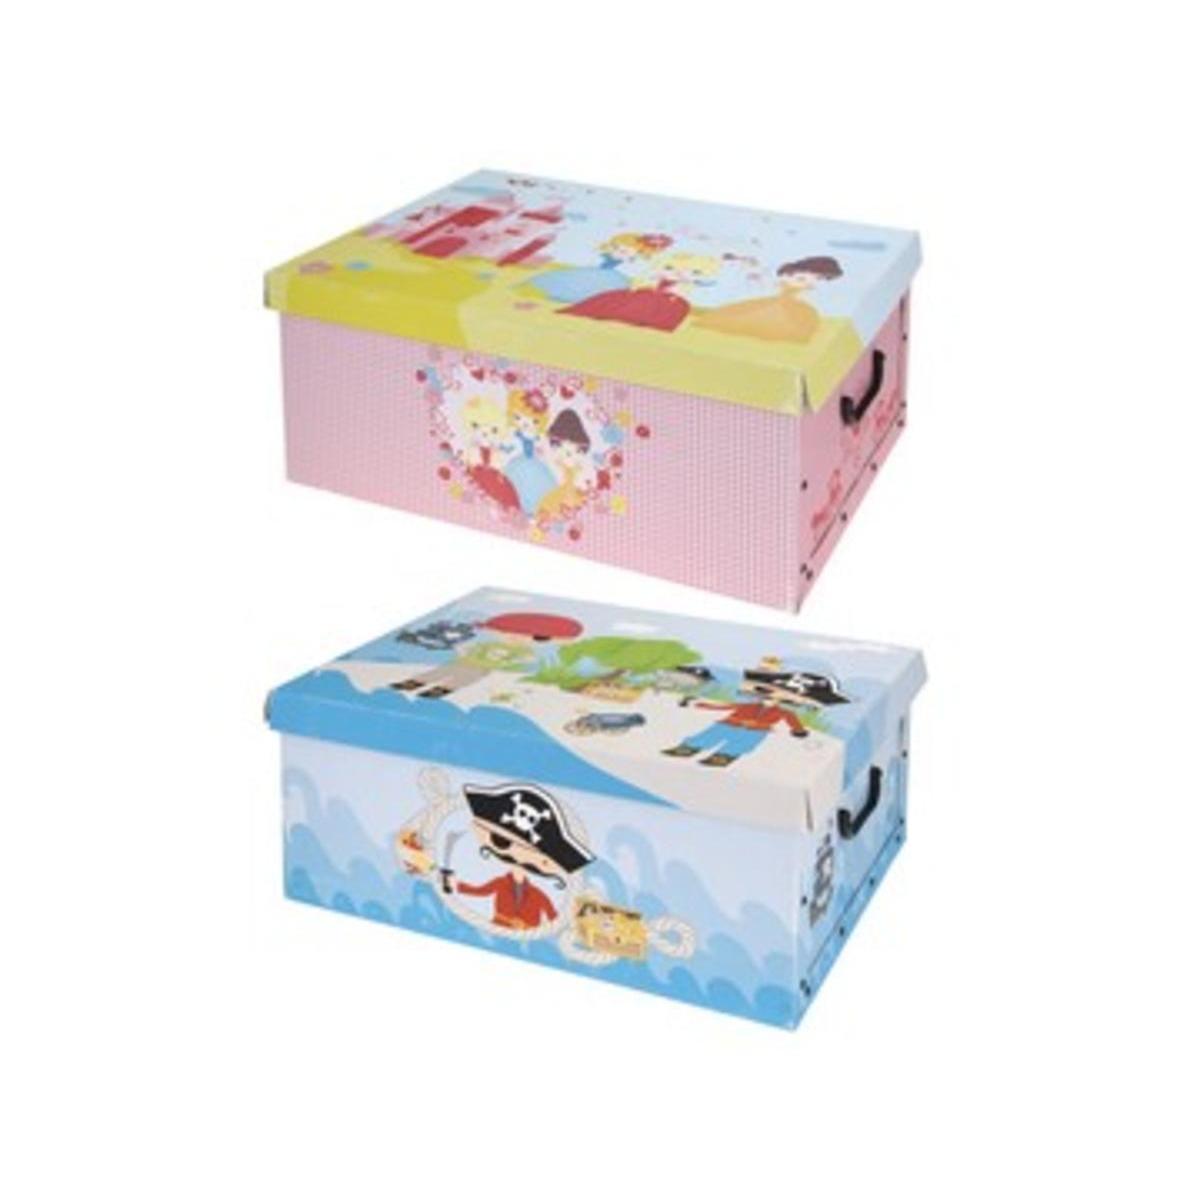 Boîte en carton pirate et princesse - L 51 x l 37 cm - Multicolore